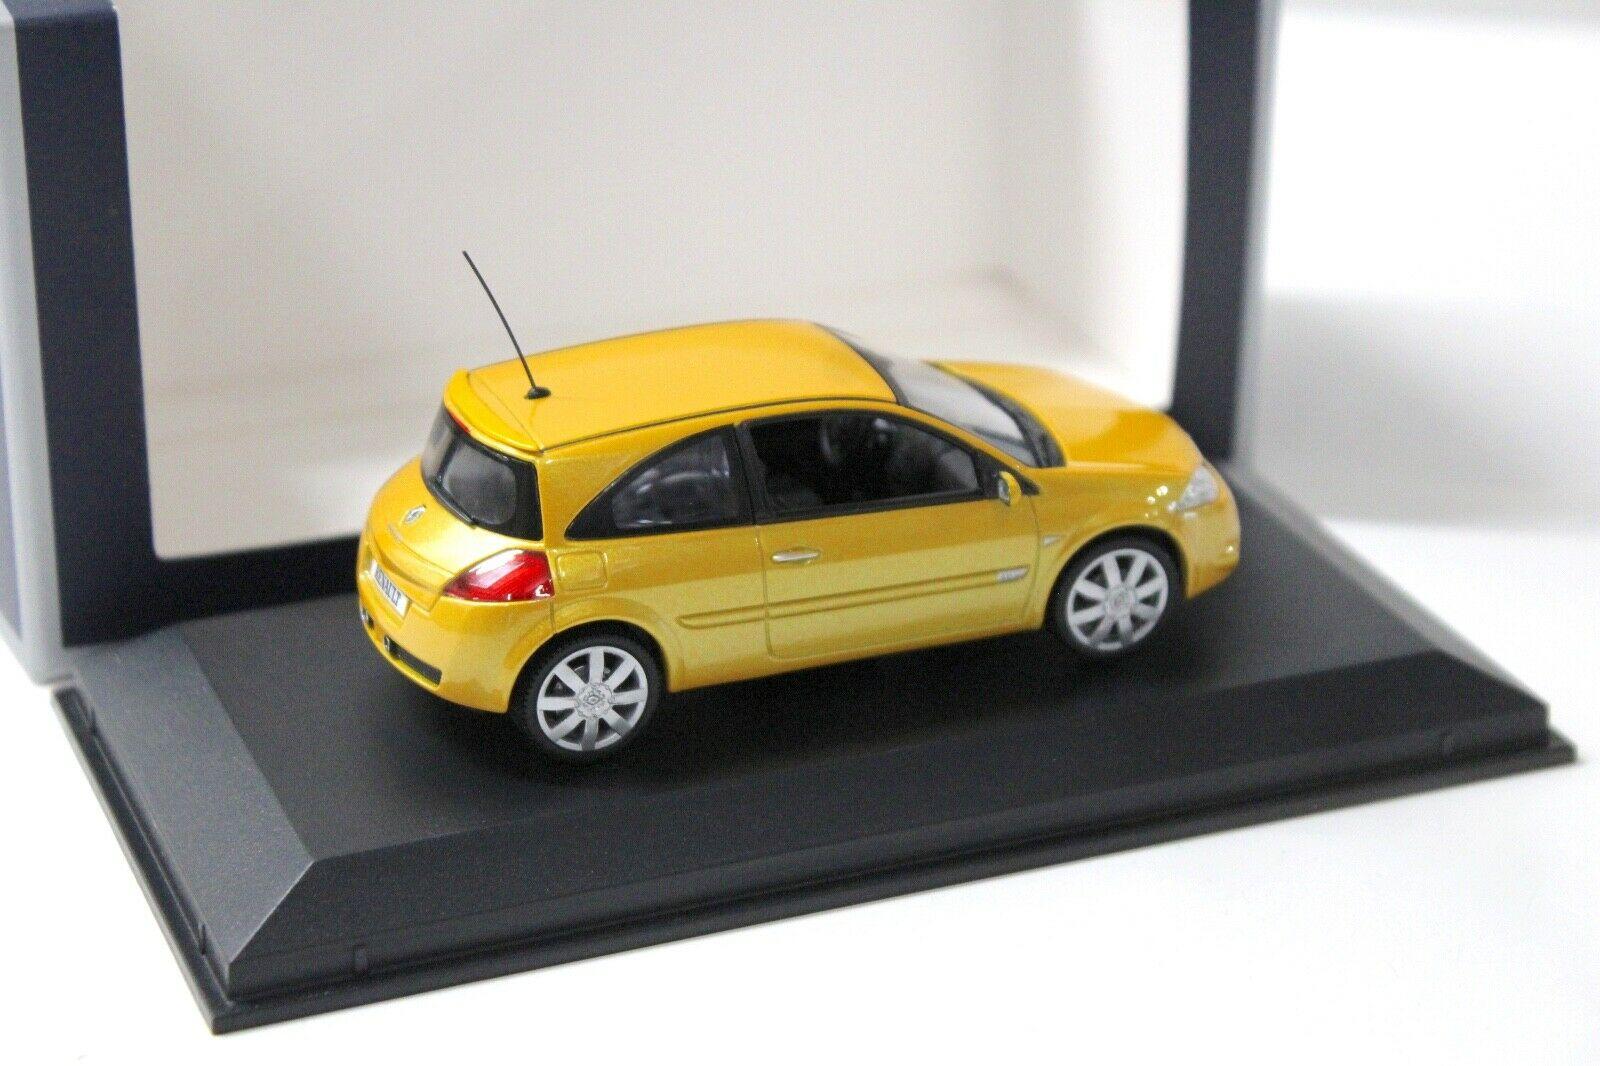 1:43 Norev Renault Megane RS 2004 Sirius yellow